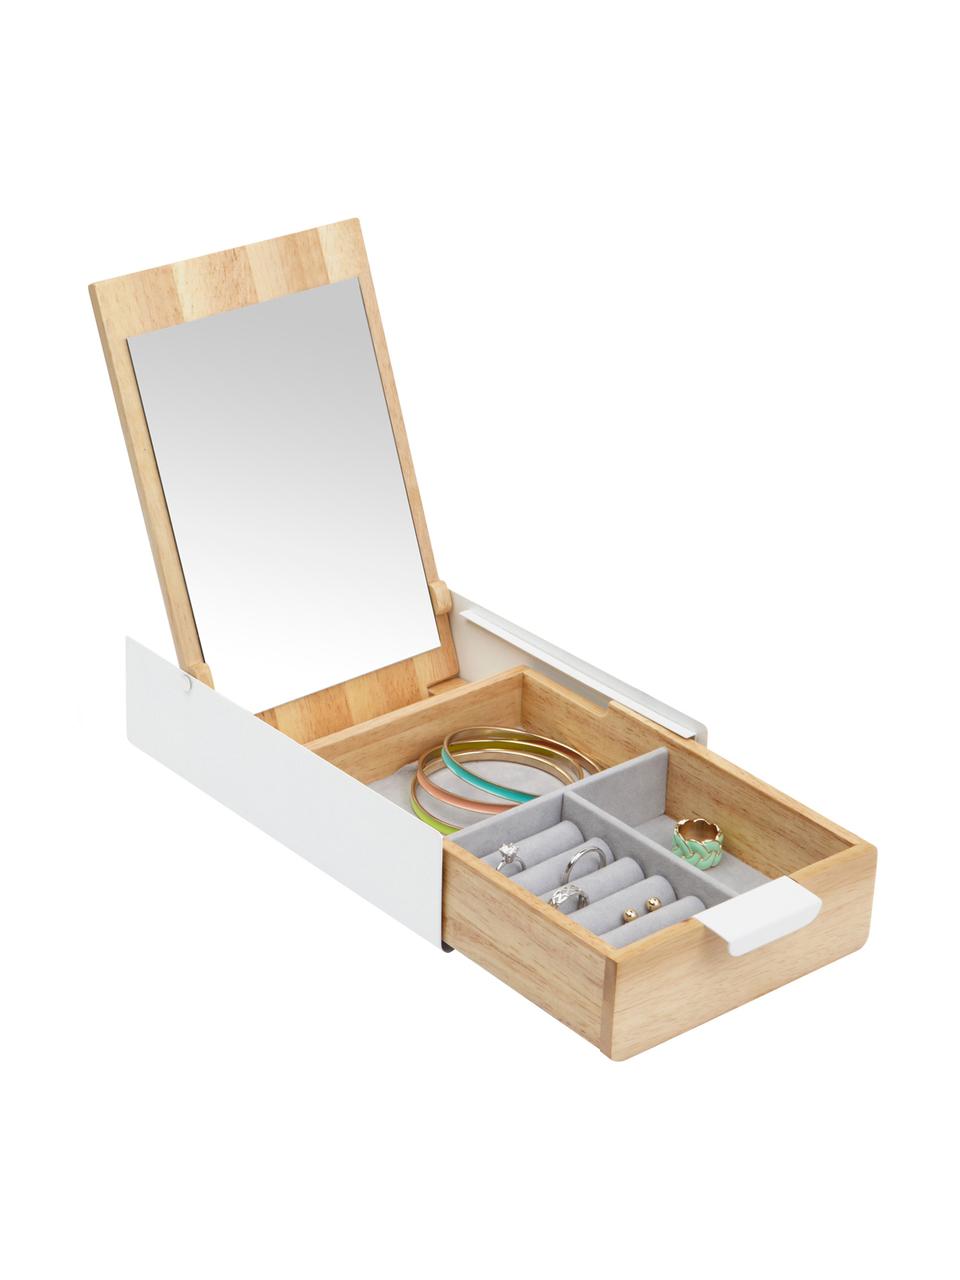 Šperkovnica Reflexion, Škatuľka: biela, drevo Podšívka: sivá Vnútro vrchnáku: zrkadlové sklo